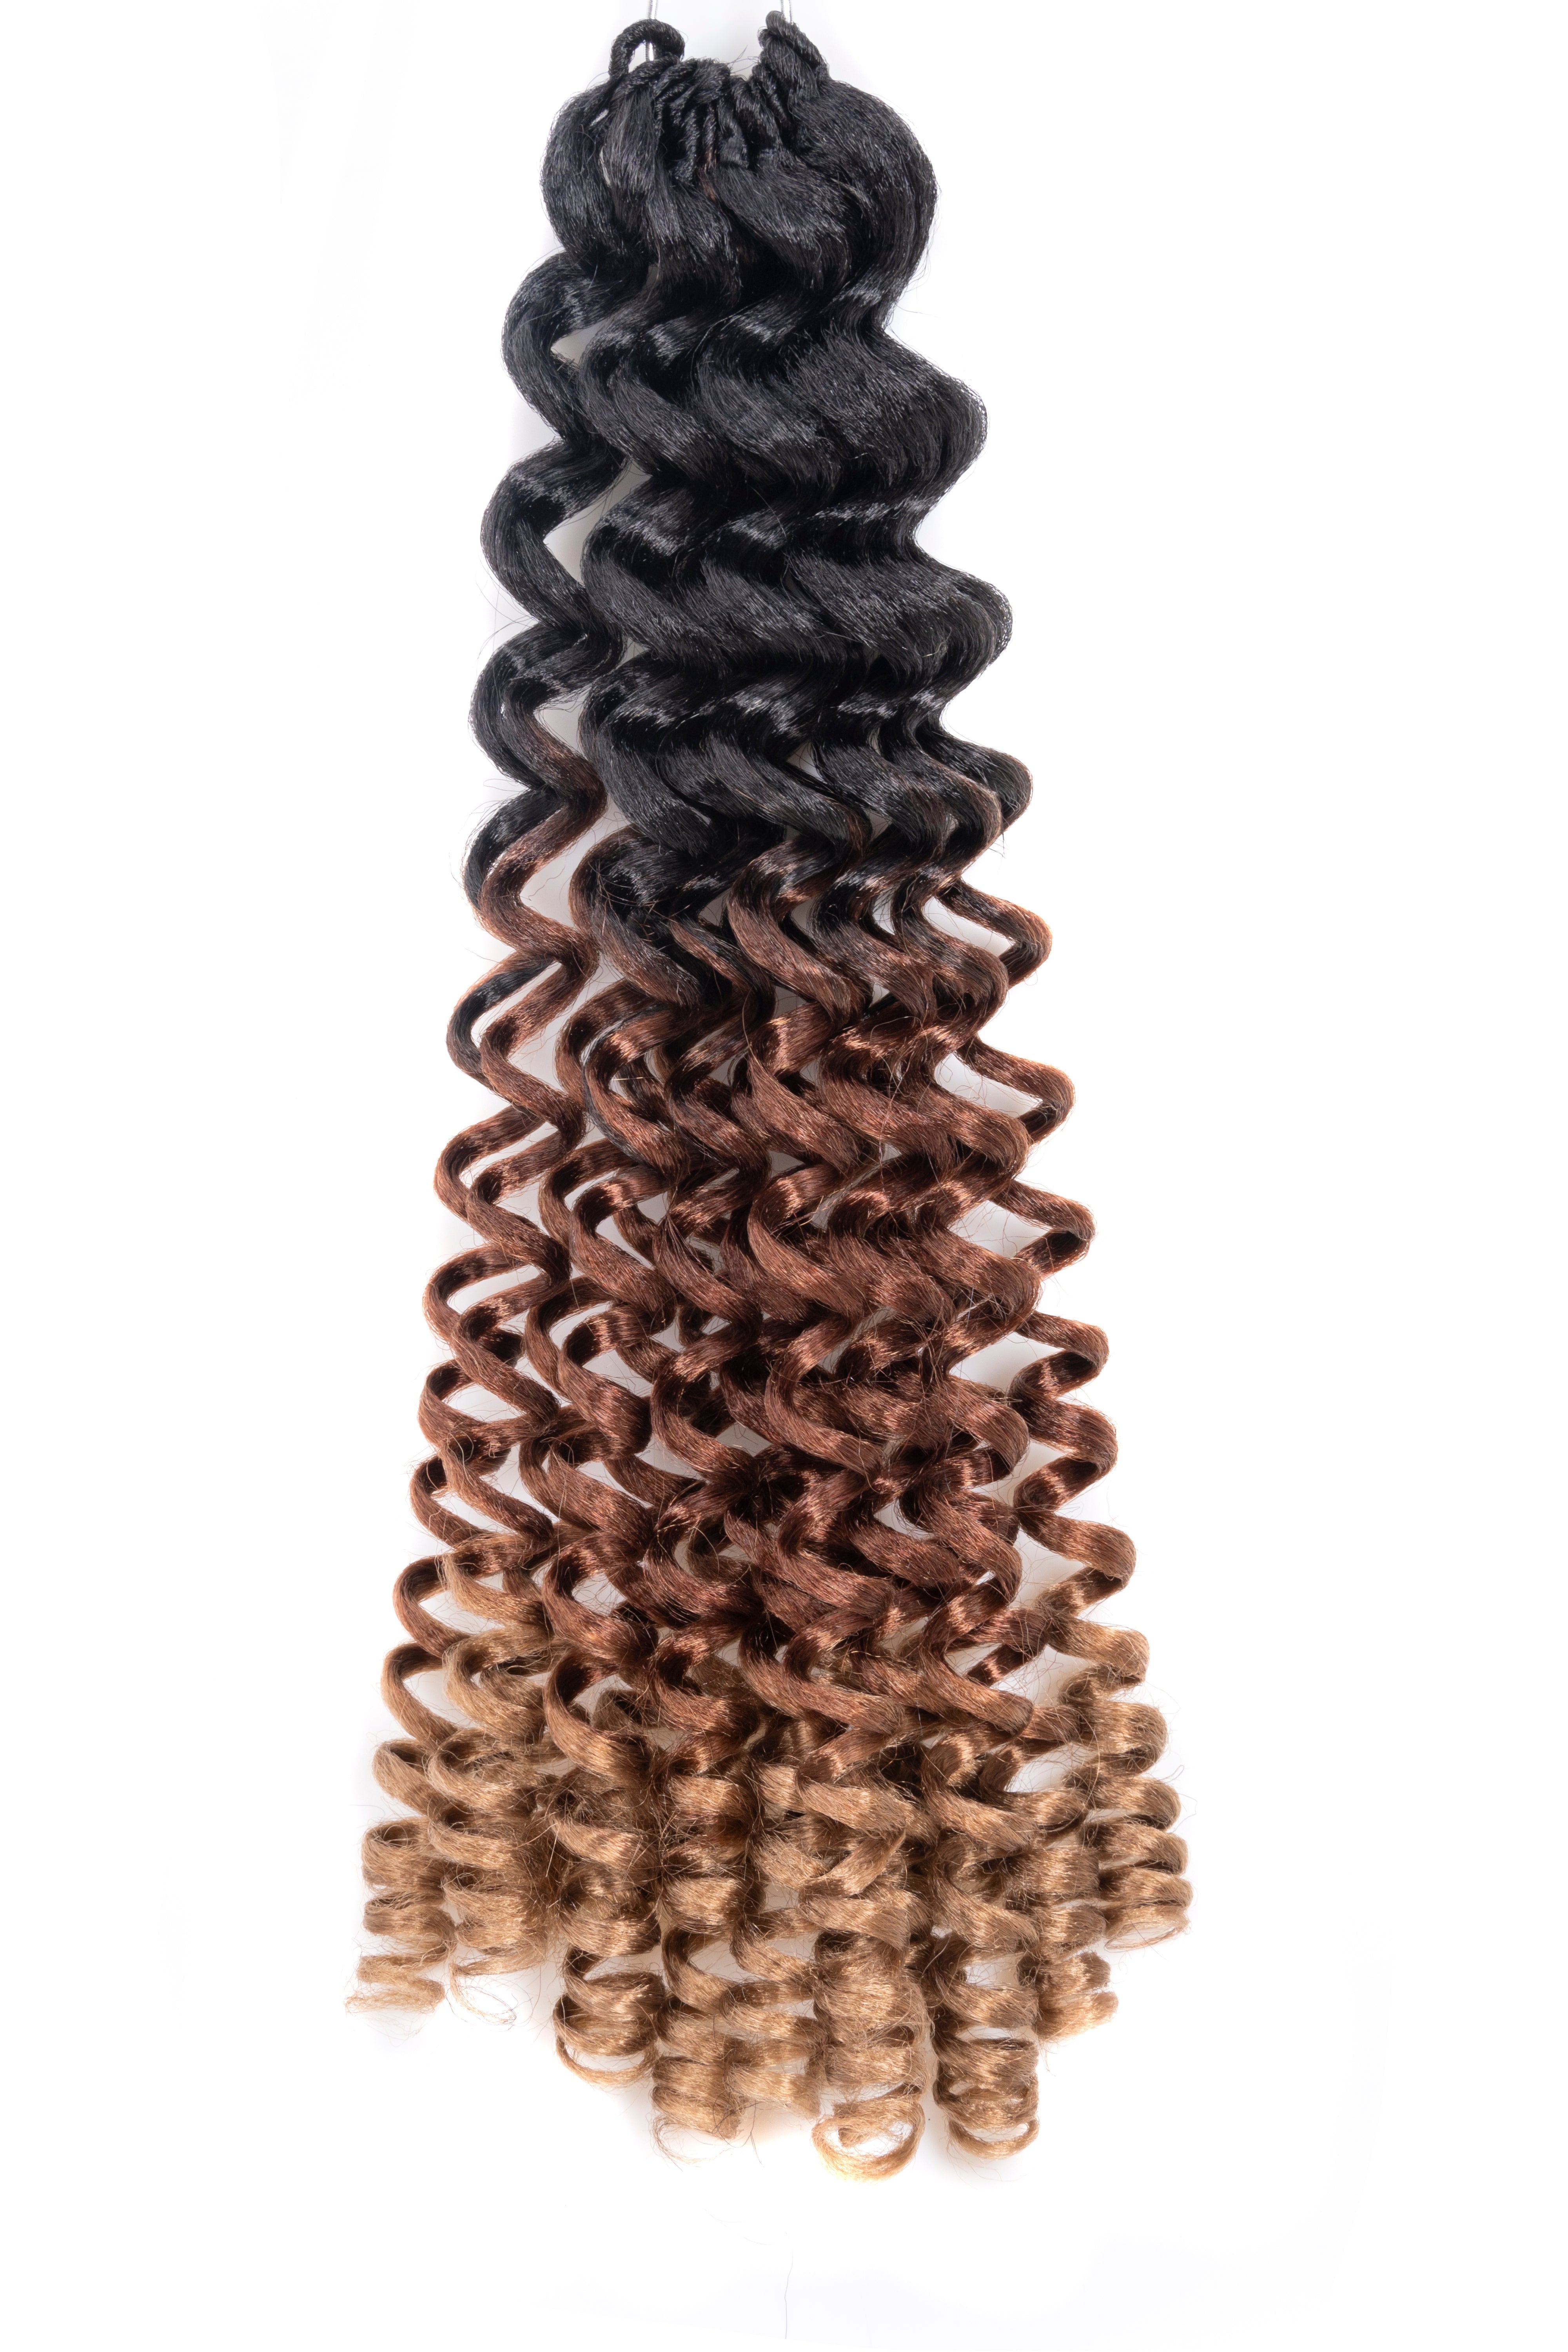 Wand Curl Crochet Hair 8